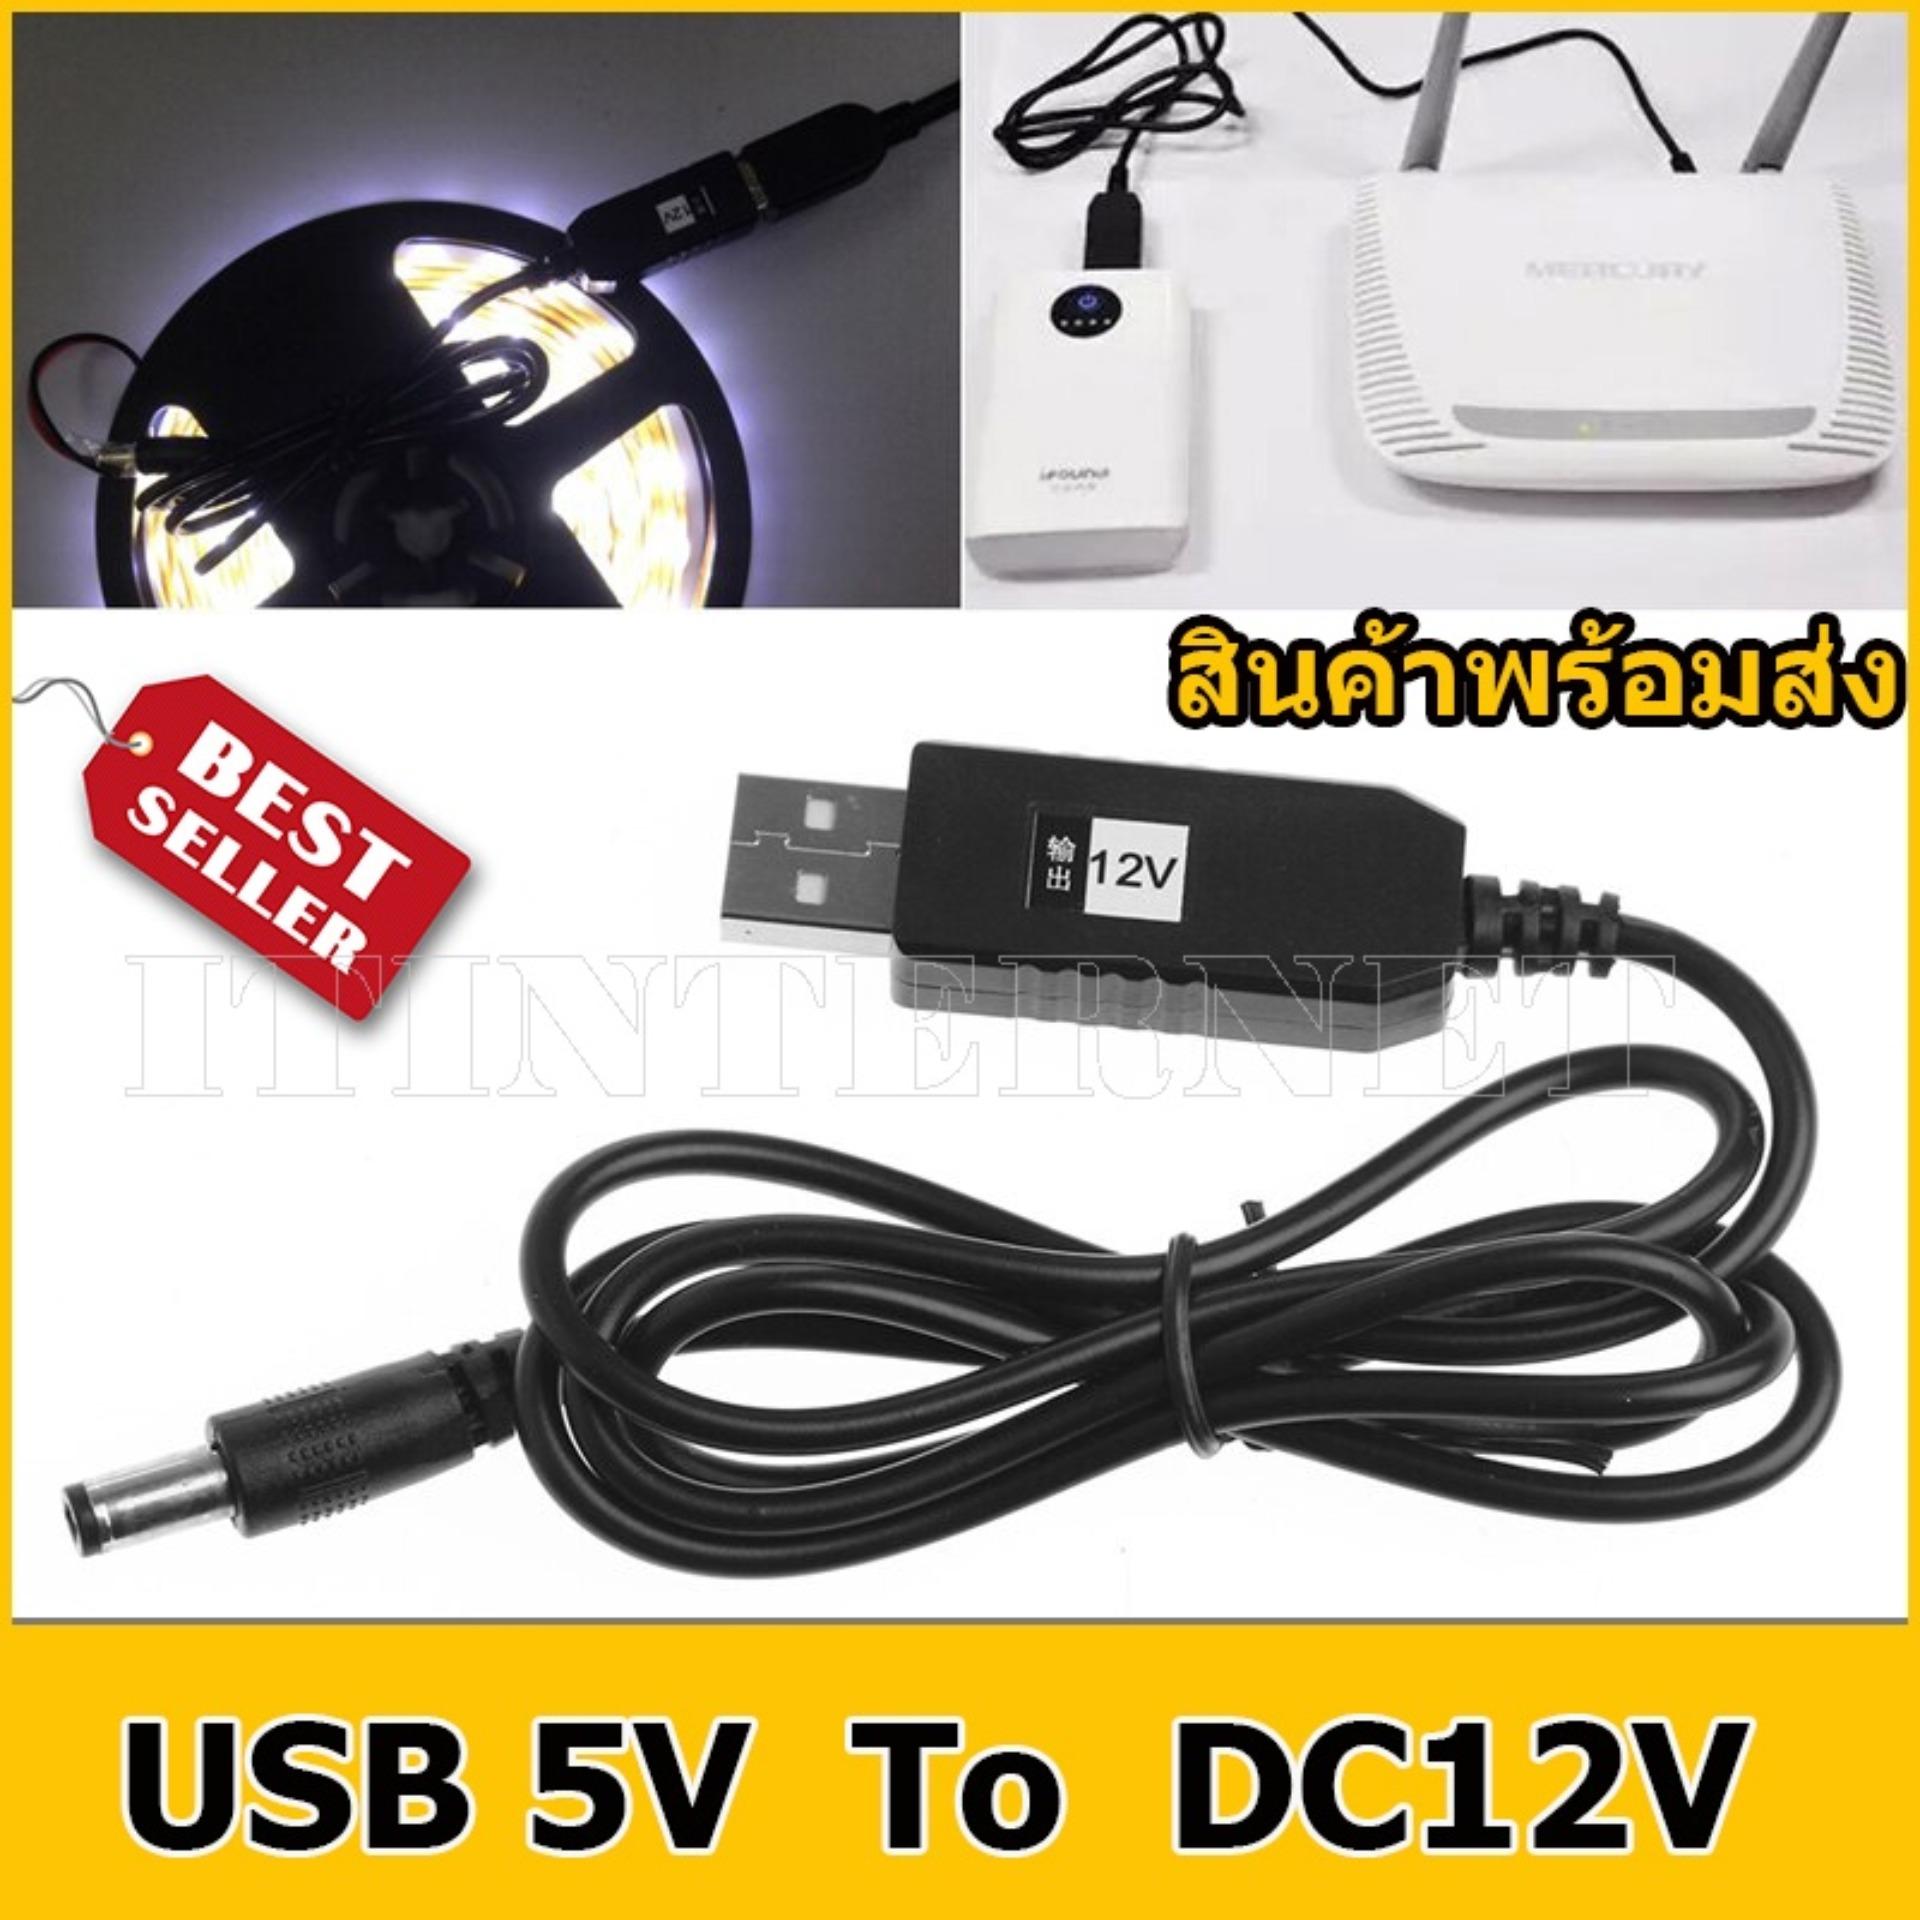 USB DC 5V to DC 12v 2.1 x 5.5 มม. อะแดปเตอร์สายเคเบิ้ล